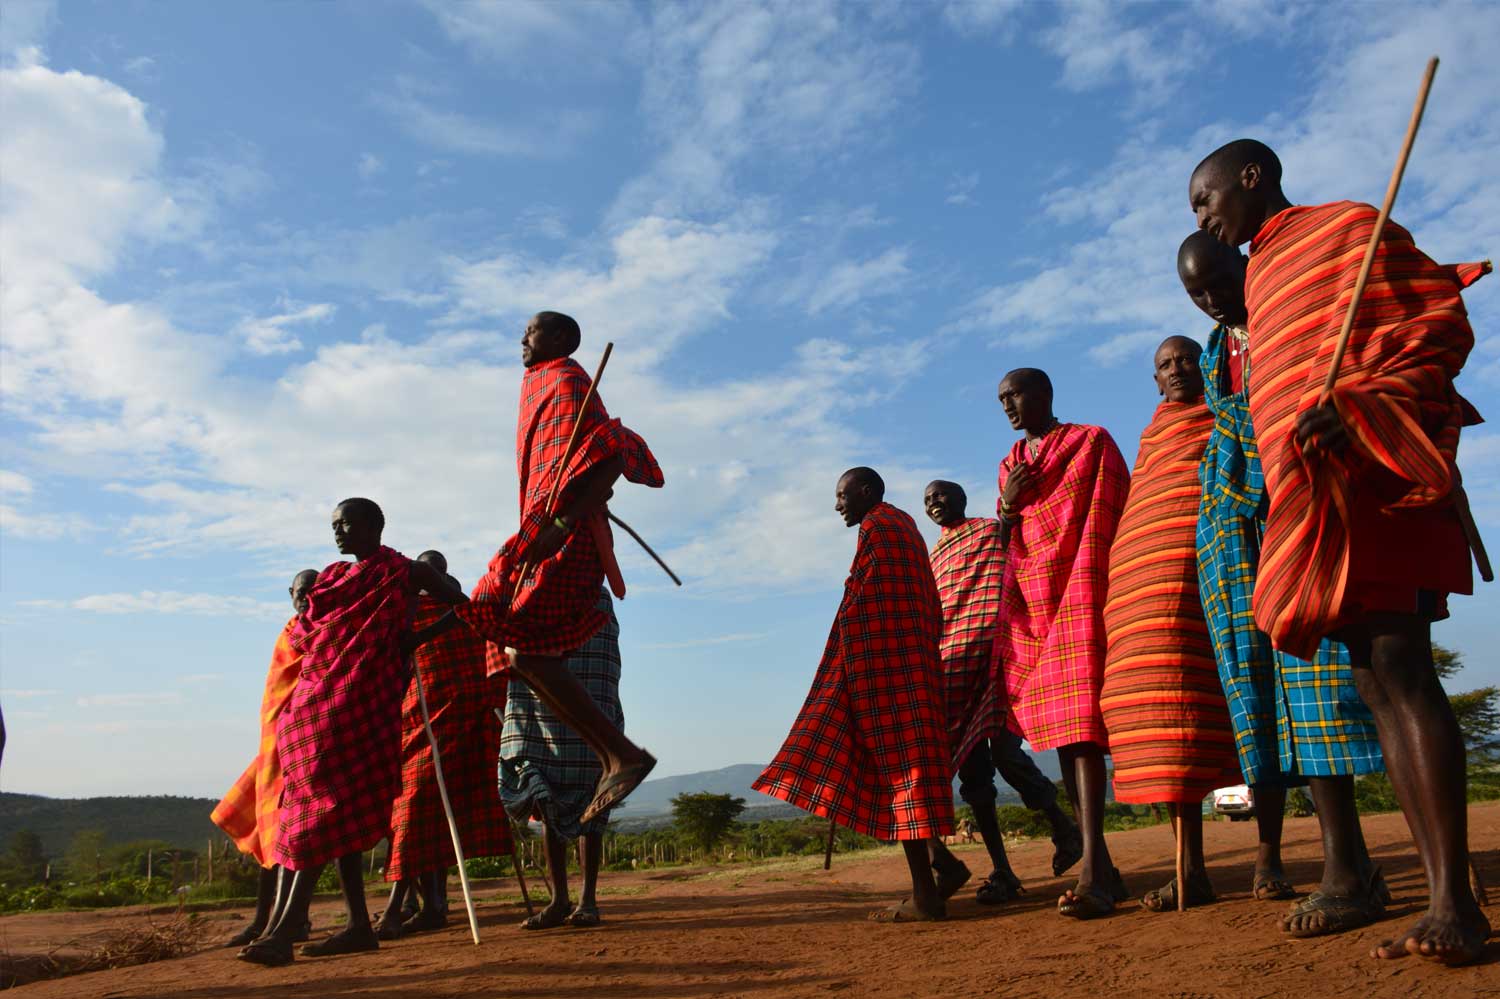 Maasai Mara Village and Tribe Life